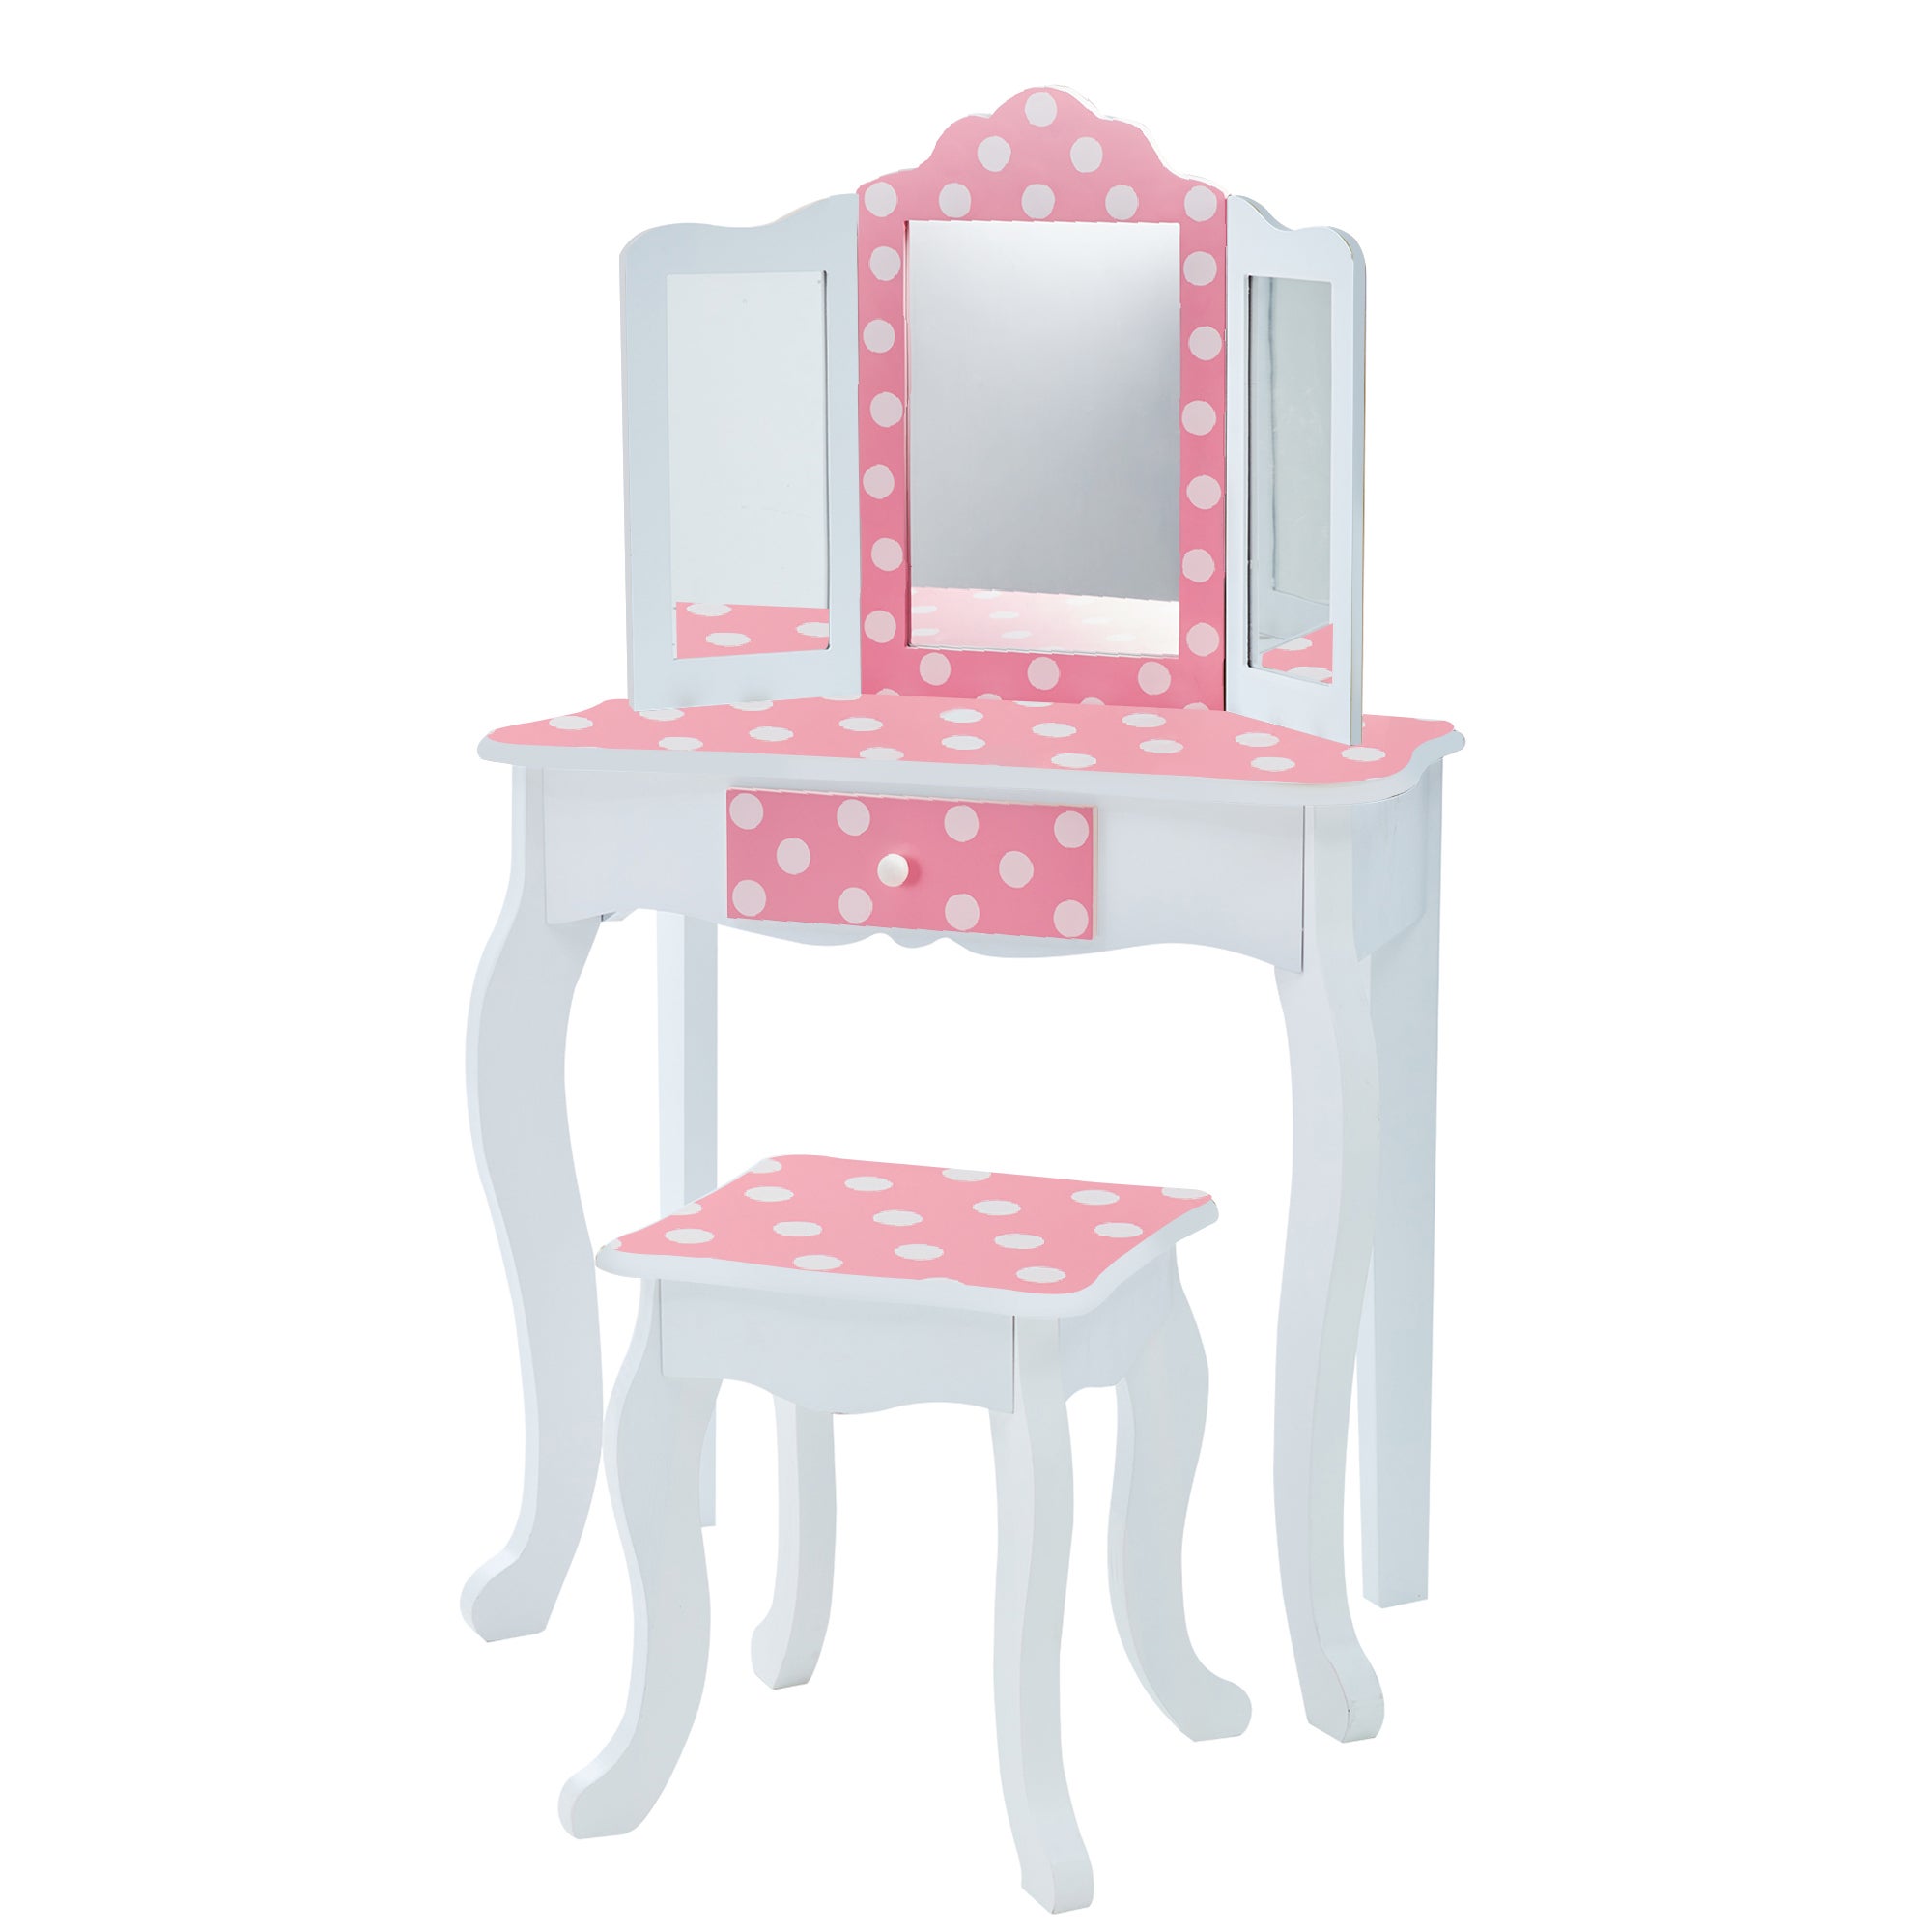 Teamson Kids Kids Vanity Set Wooden Table with Mirror & Stool Pink TD-11670F